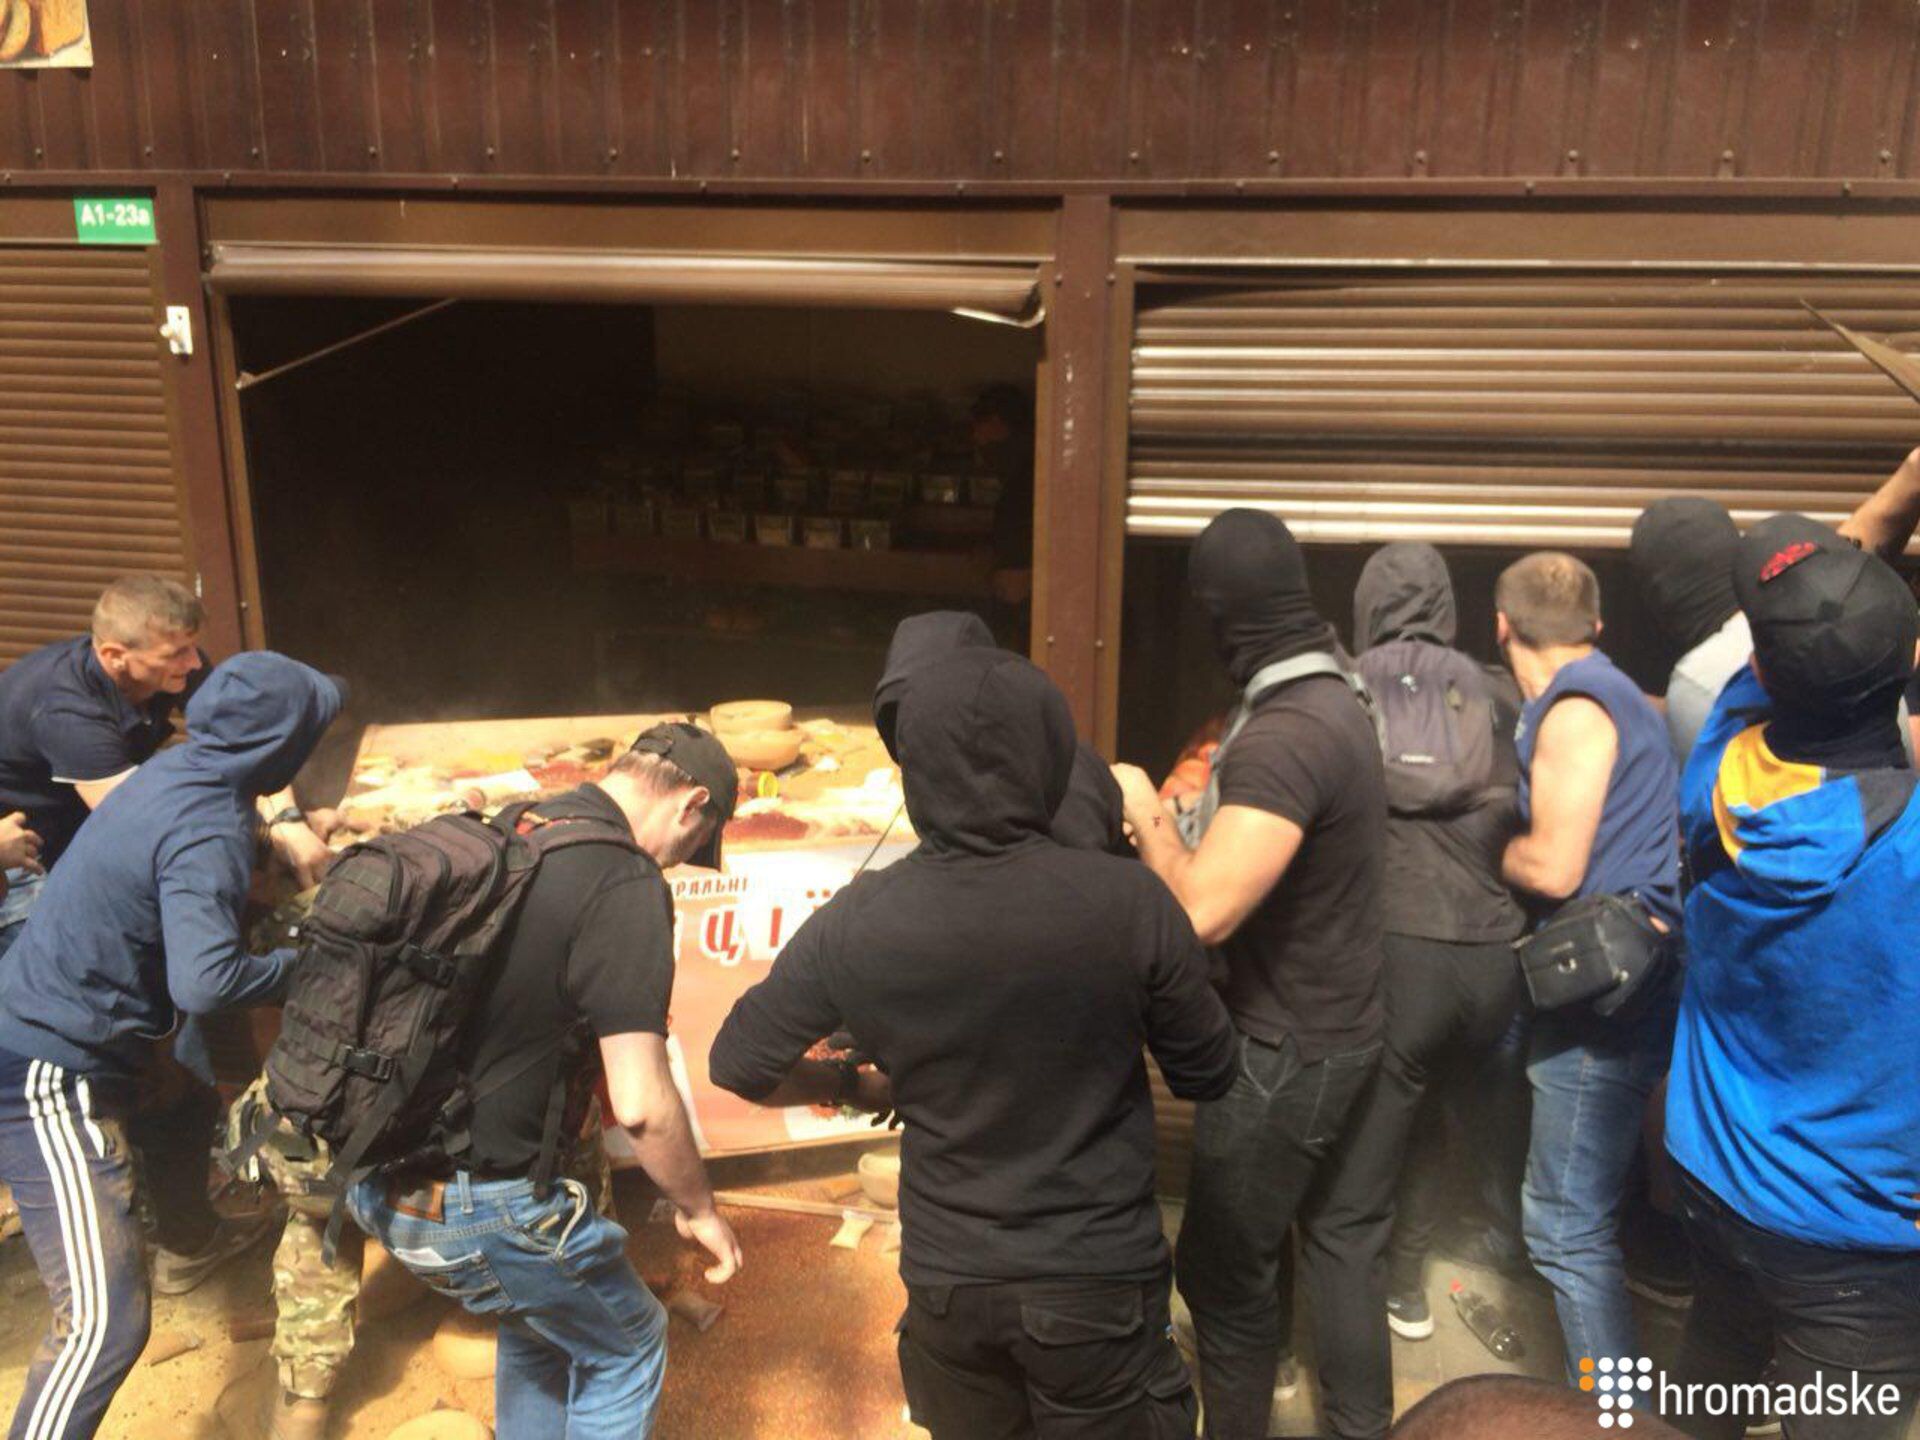 Газ, камни и стычки с полицией: в Киеве устроили погром на рынке